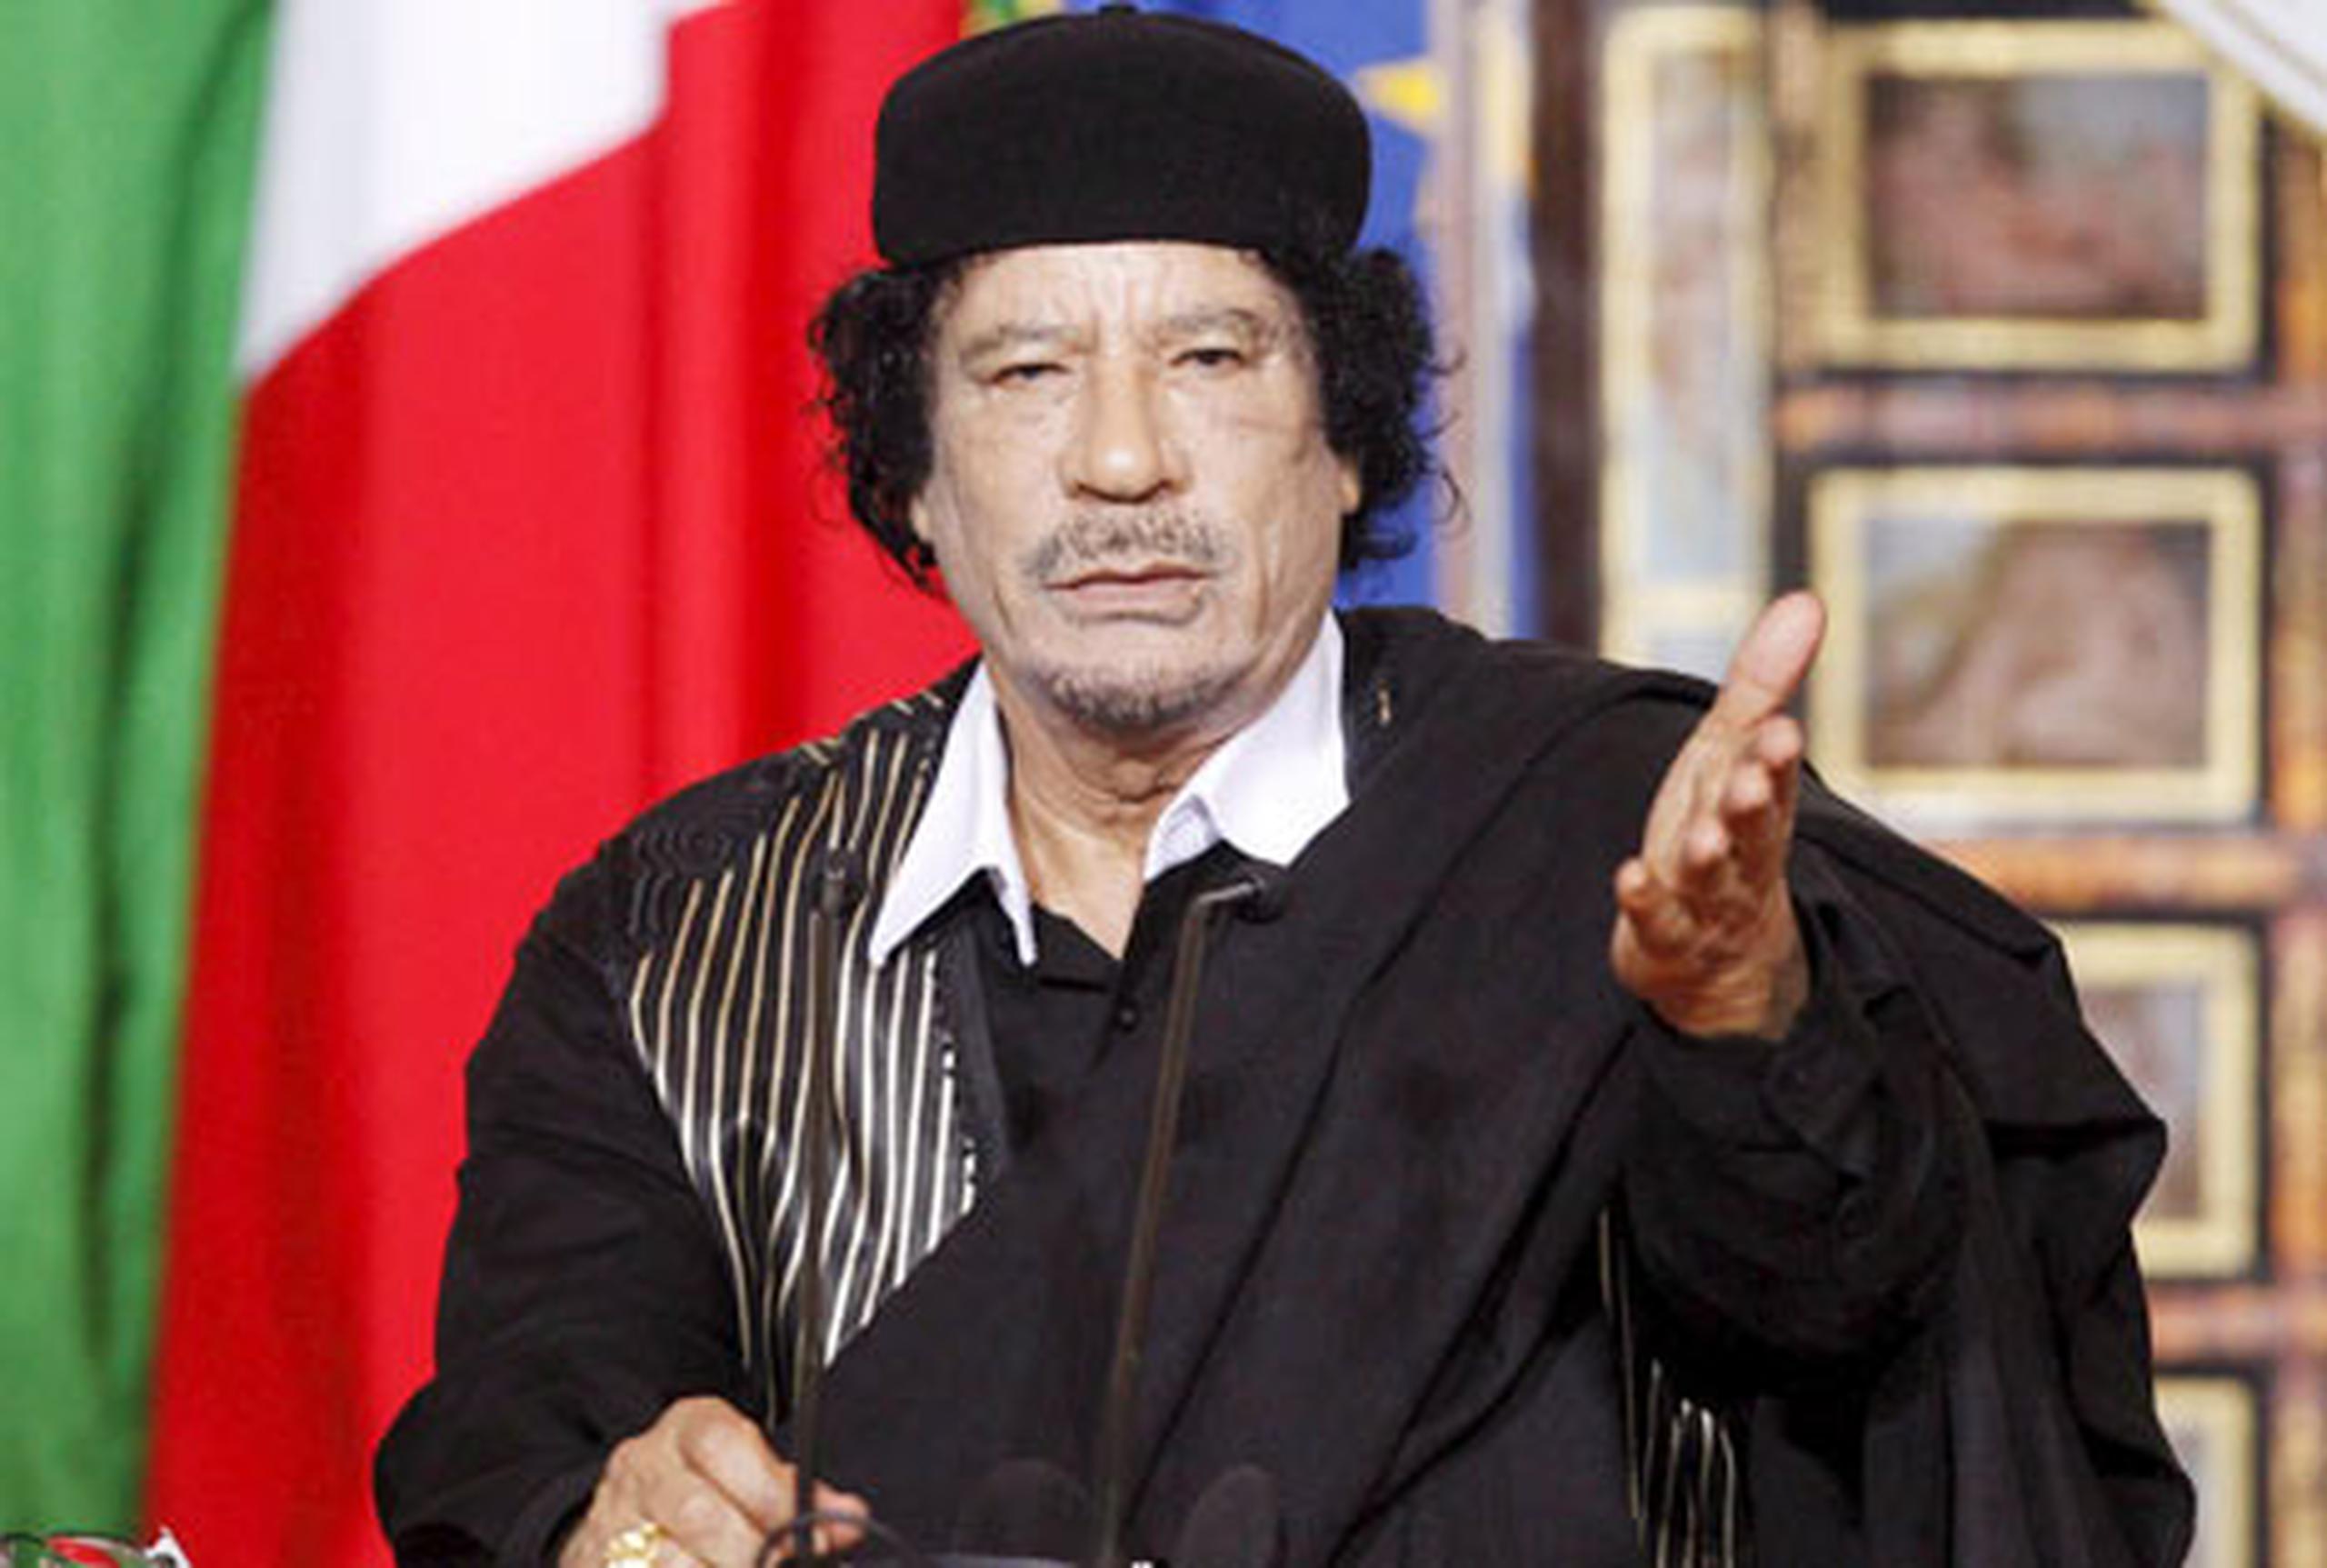 El presidente libio, Moamar Al Gadafi, recibirá asilo político de Uganda, si así lo desea. (Archivo)